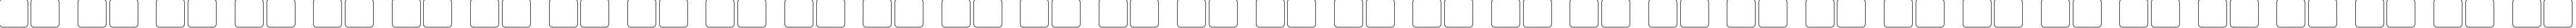 Пример написания русского алфавита шрифтом Pixel Digivolve